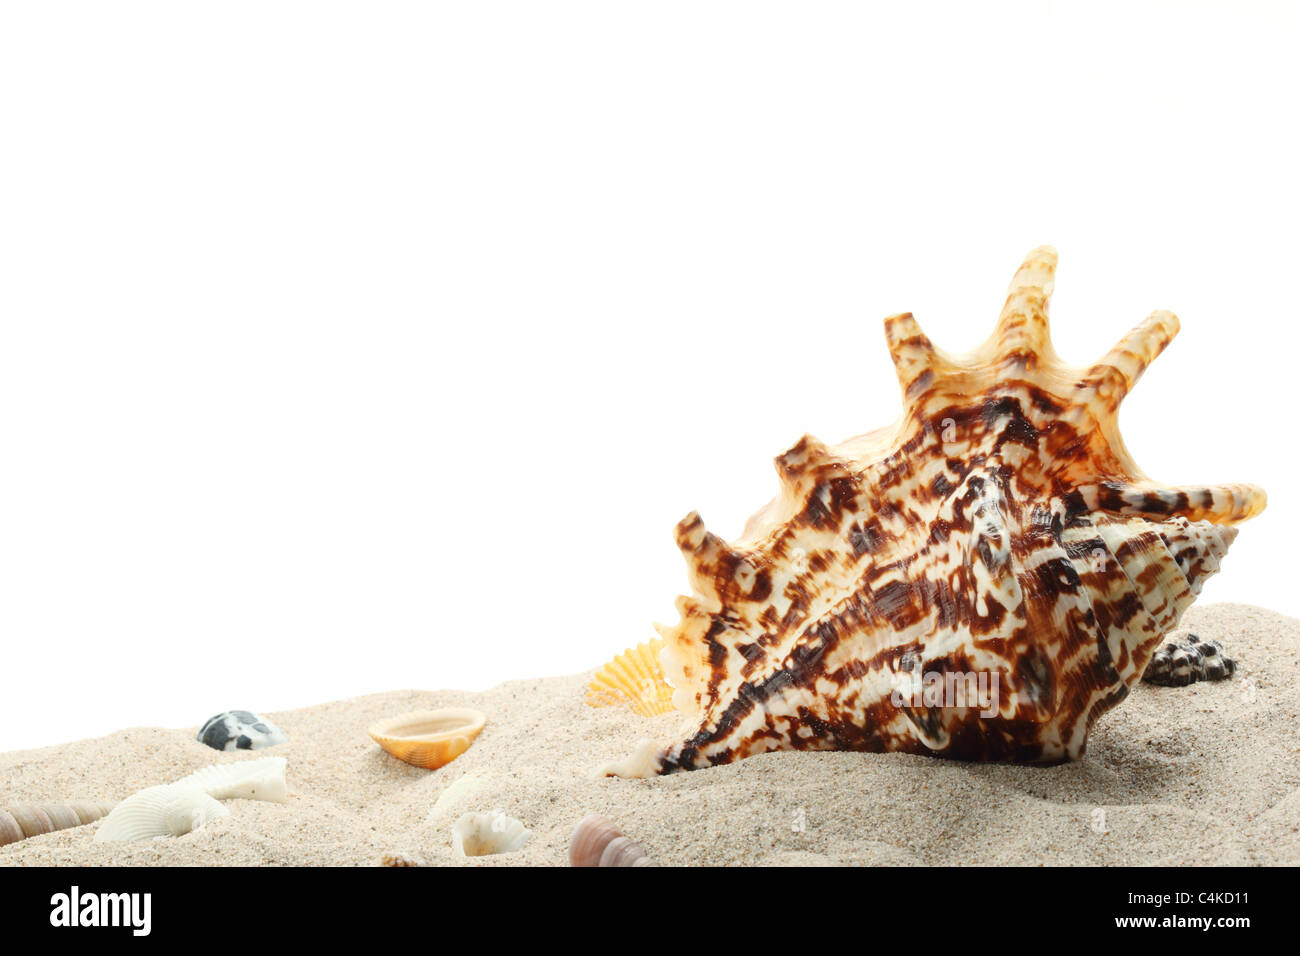 Seashells on sand,isolated on white background. Stock Photo